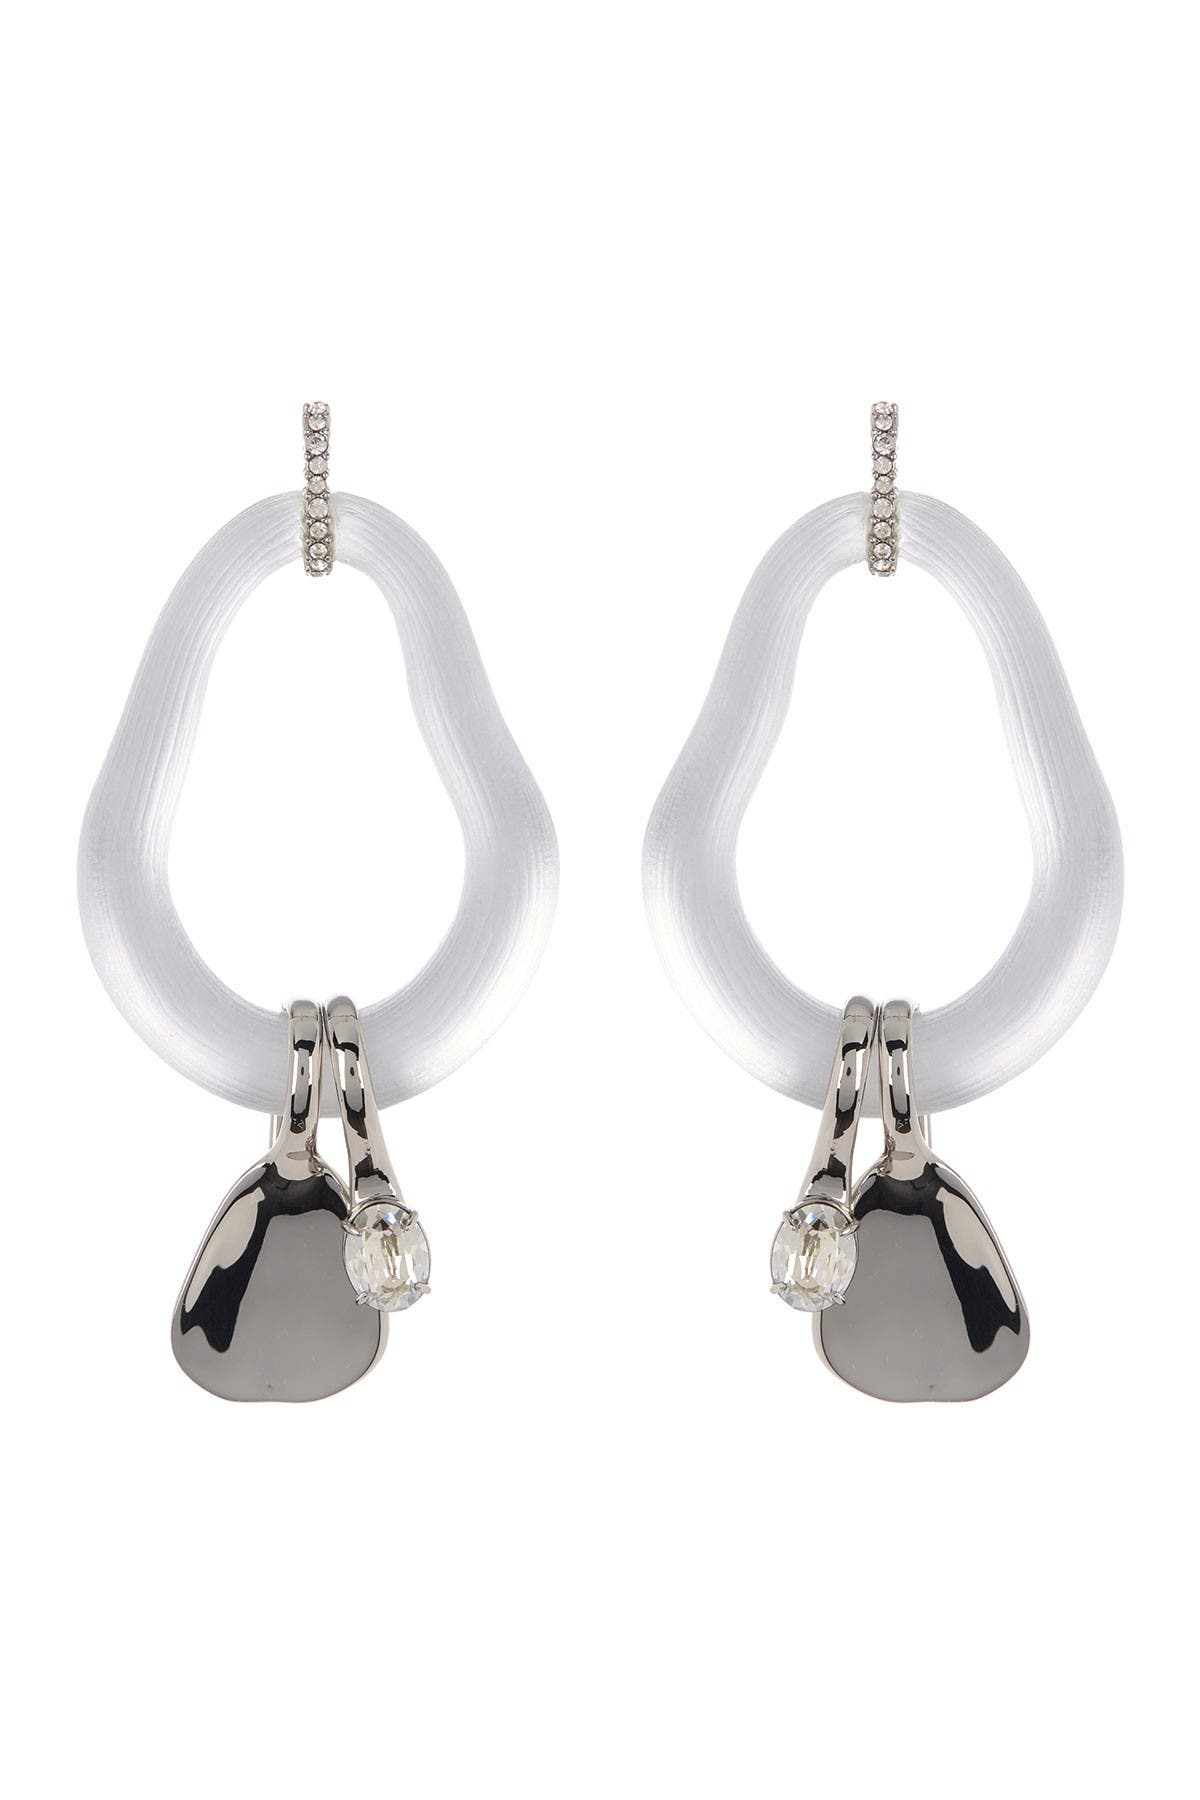 Alexis Bittar Liquid Metal & Crystal Charm Frontal Hoop Drop Earrings In Silver